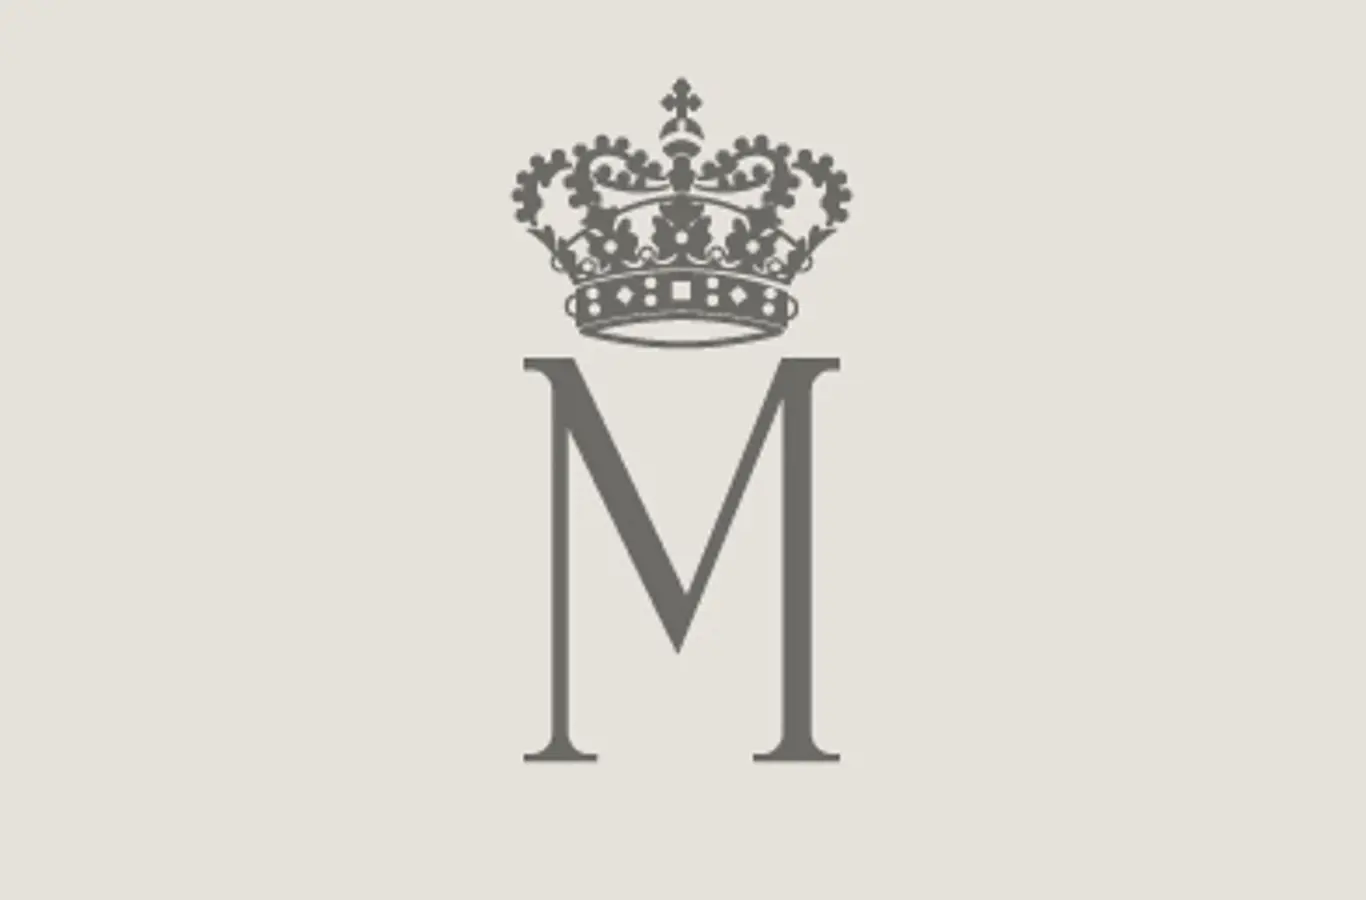 Hendes Kongelige Højhed Prinsesse Maries monogram